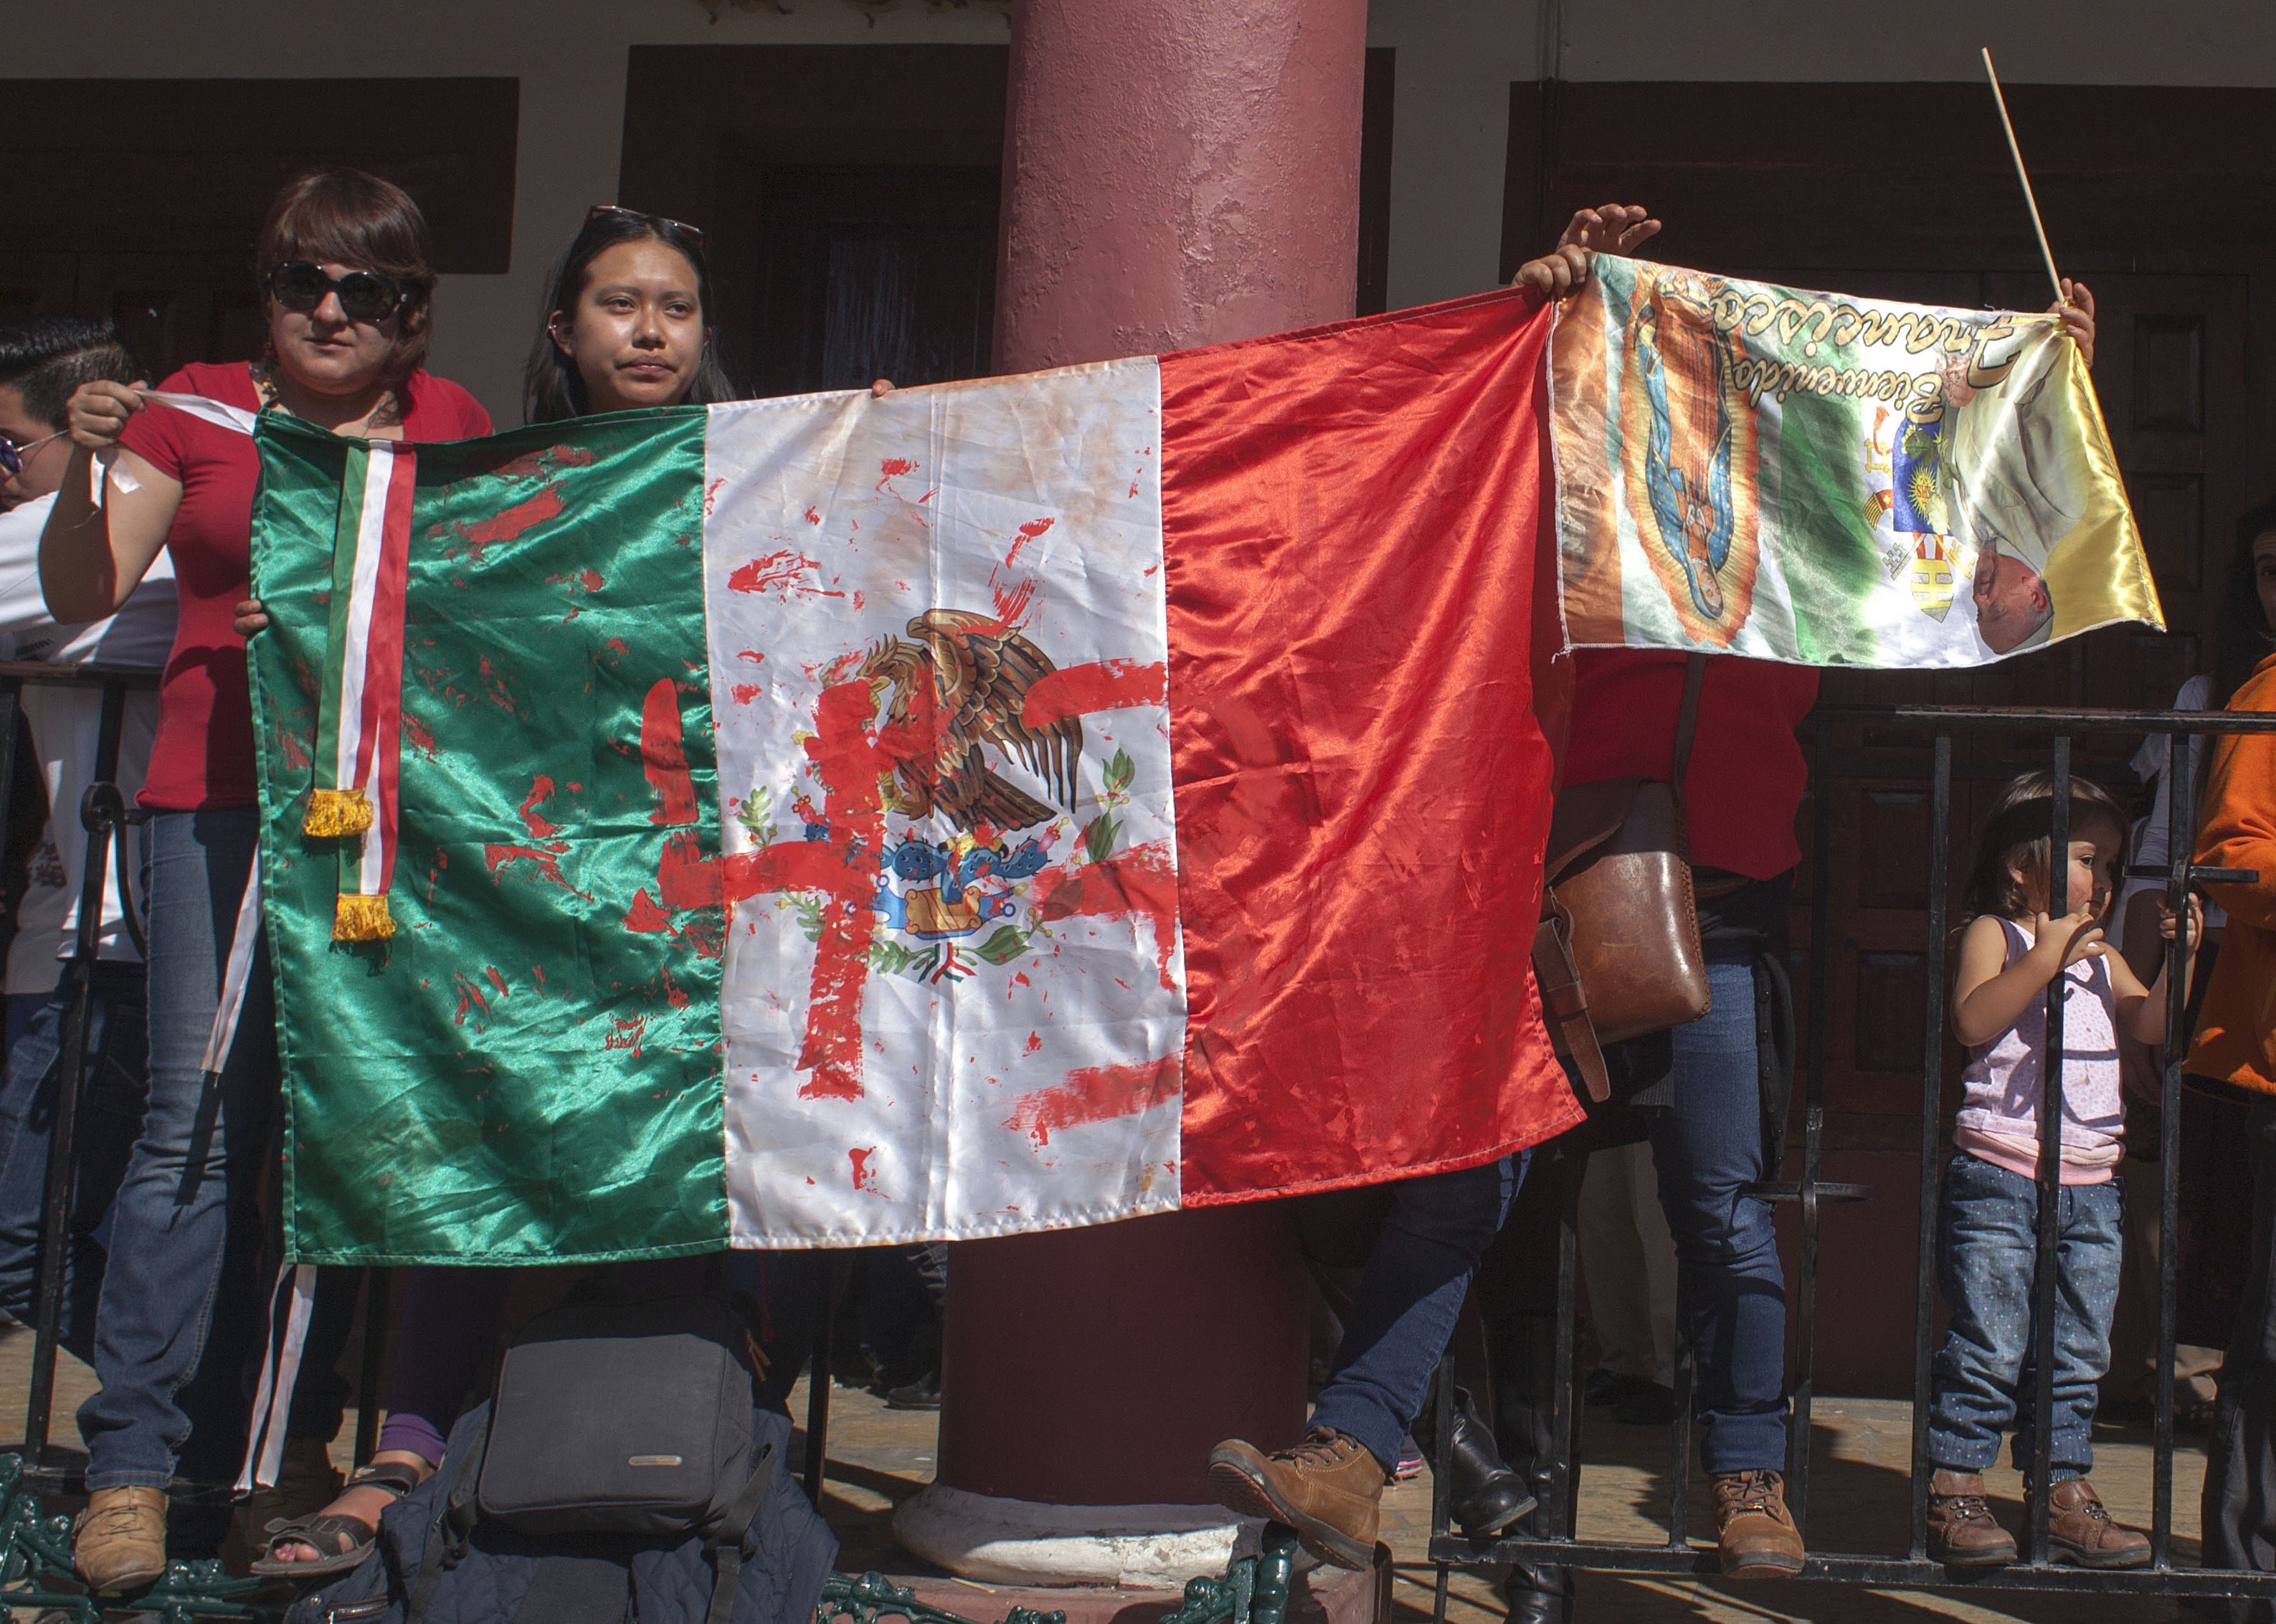 Laboratorio austriaco: No hay evidencias sobre los 43 estudiantes mexicanos en el basurero